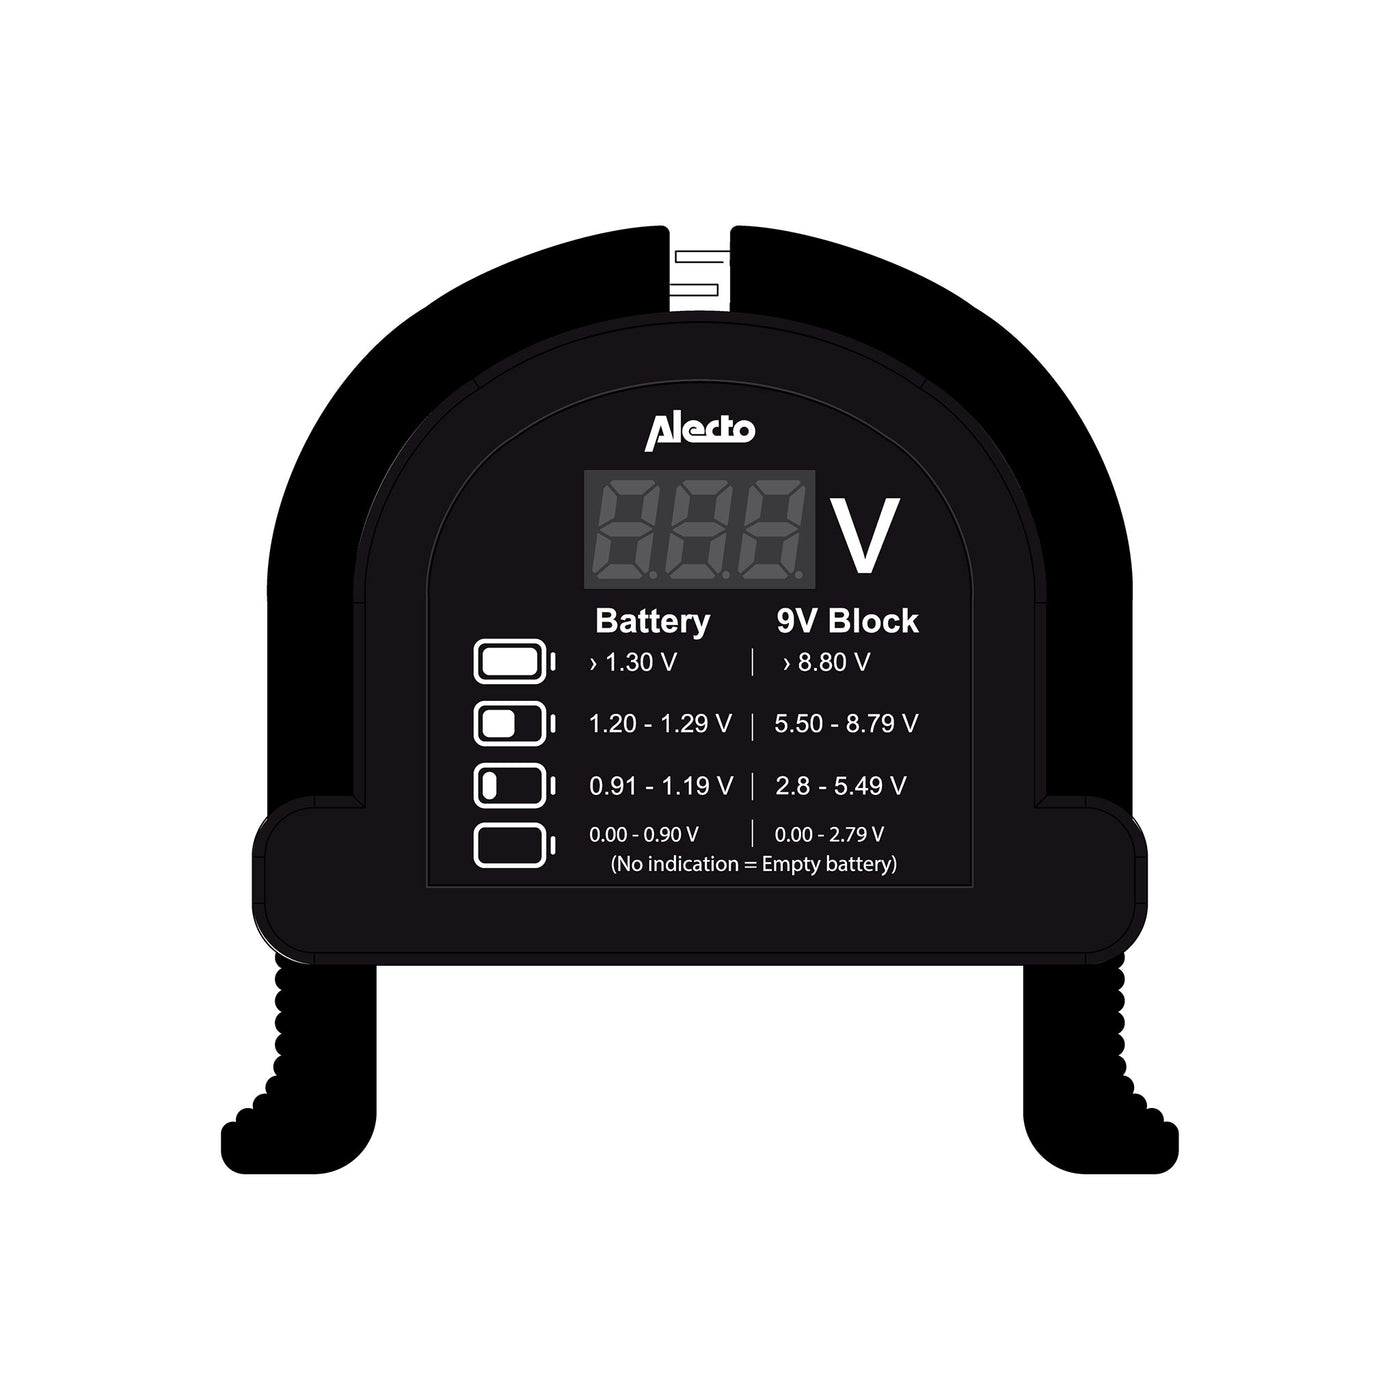 Alecto BTT2 - Compacte universele batterijtester voor AA, AAA, C, D en 9V batterijen - Zwart